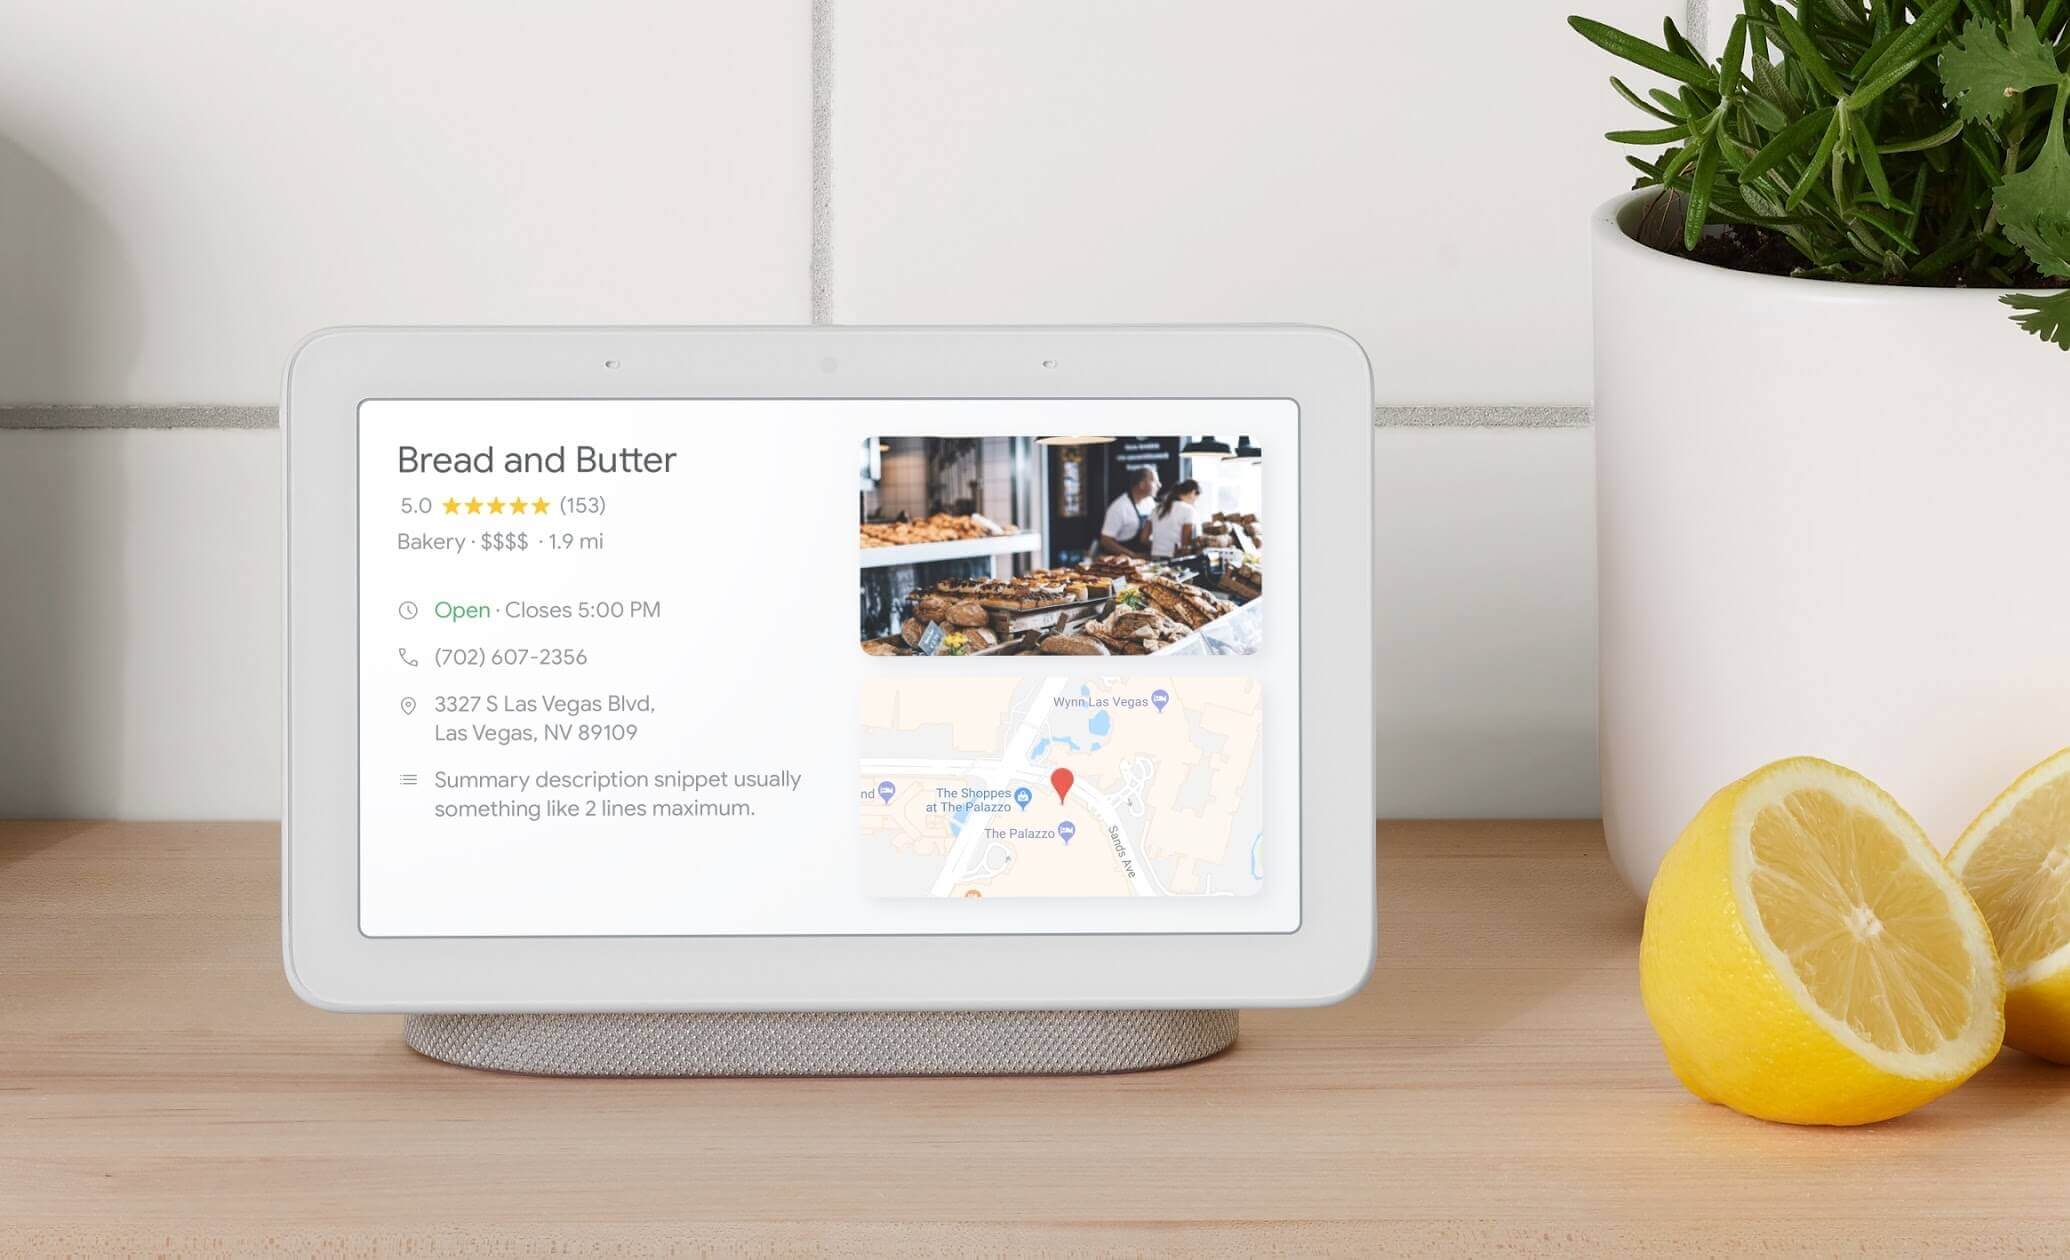 Google представила Home Hub – «лучший смарт-дисплей для кухни», а также медиаплеер Chromecast 3.0